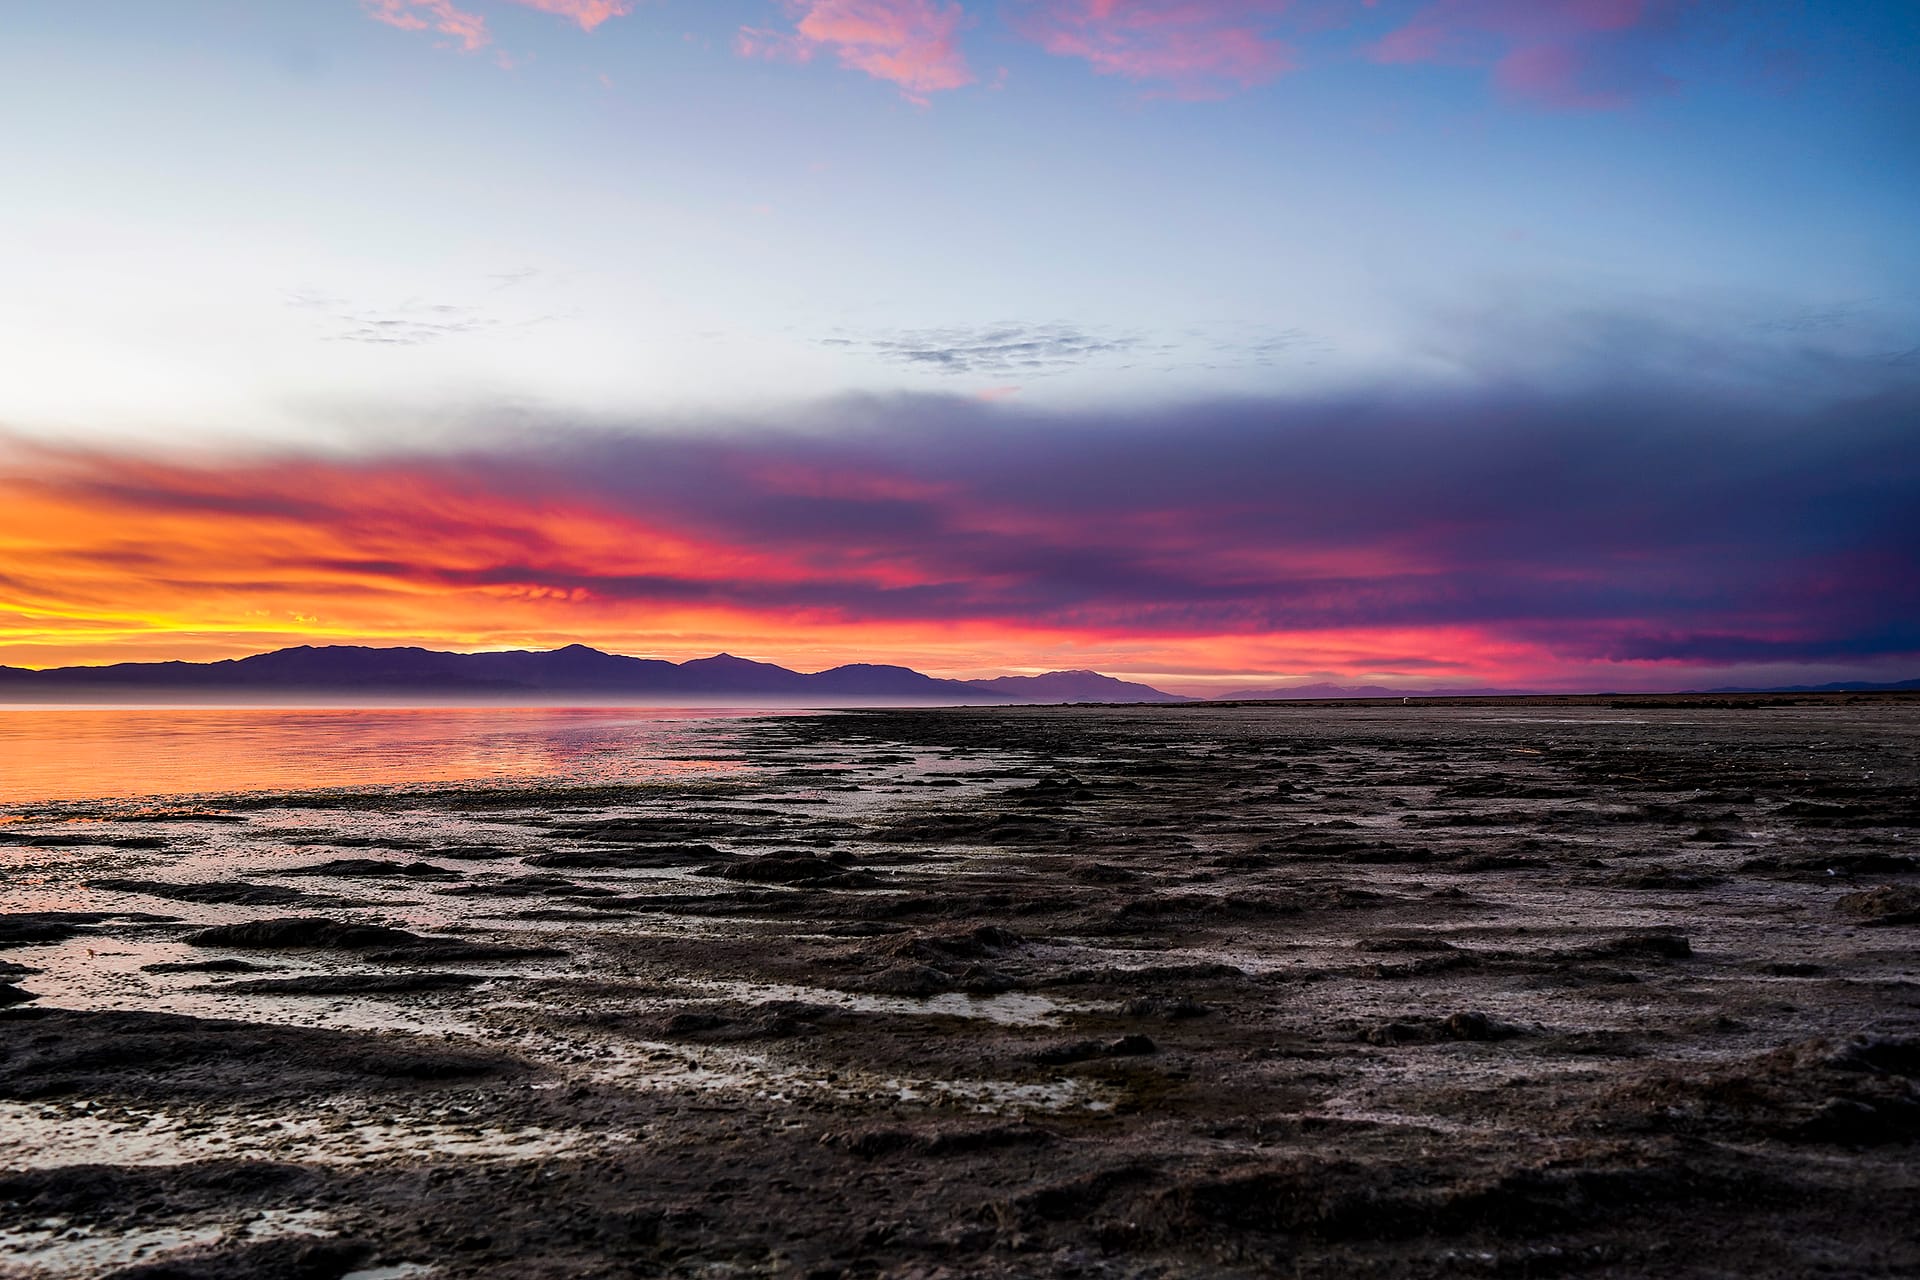 Salton Sea: From Heavenly To Hazardous